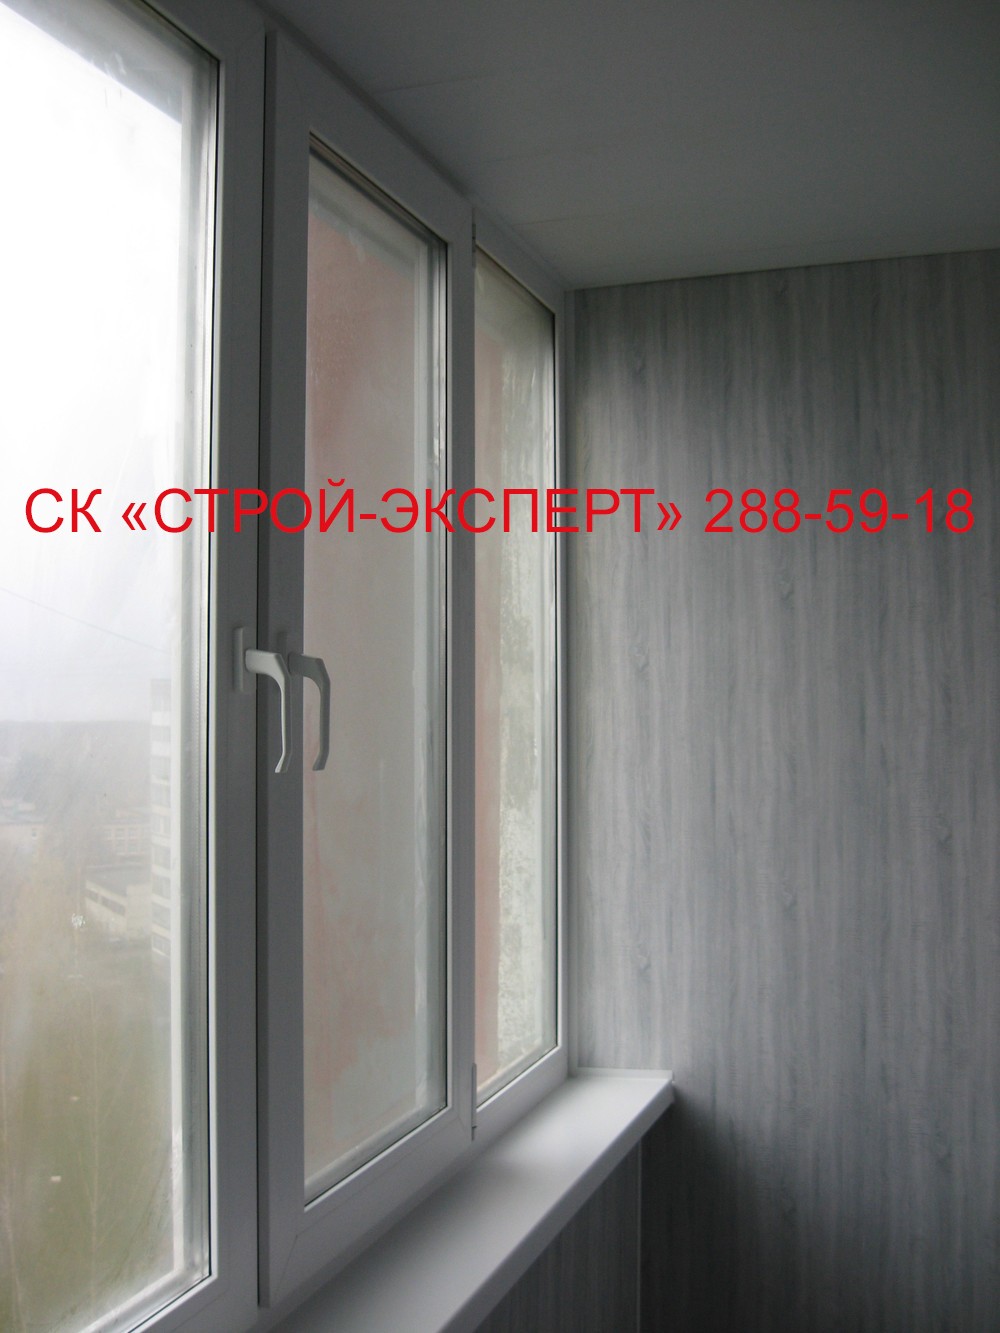 ФОТО-ГАЛЕРЕЯ - Внутренняя отделка балконов и лоджий фото - Балконы Пермь внутренняя отделка